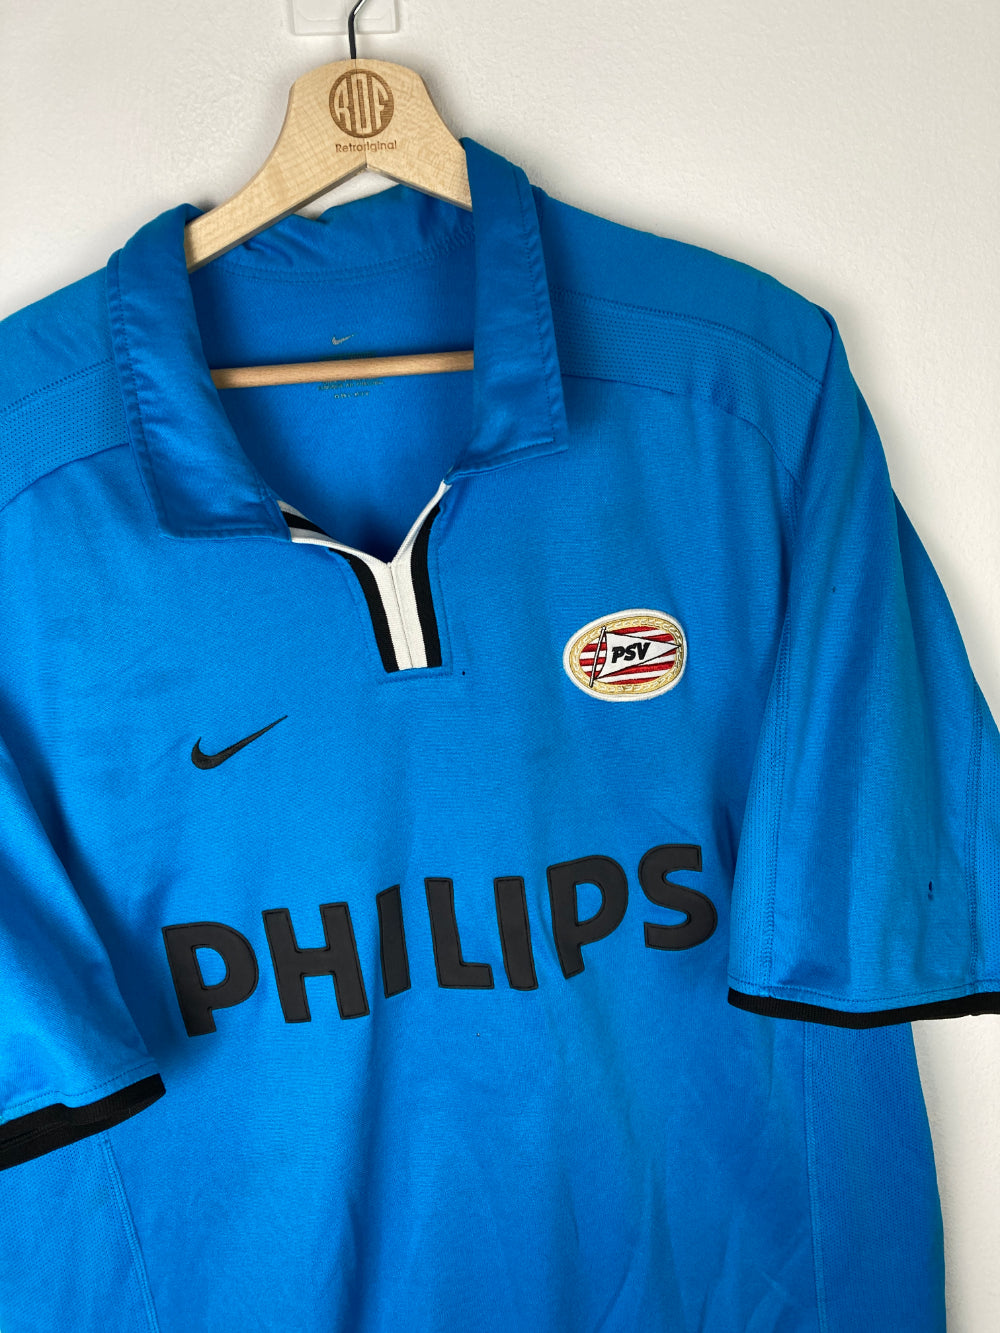 
                  
                    Original PSV Eindhoven Home Jersey 2001-2002 - XXL
                  
                